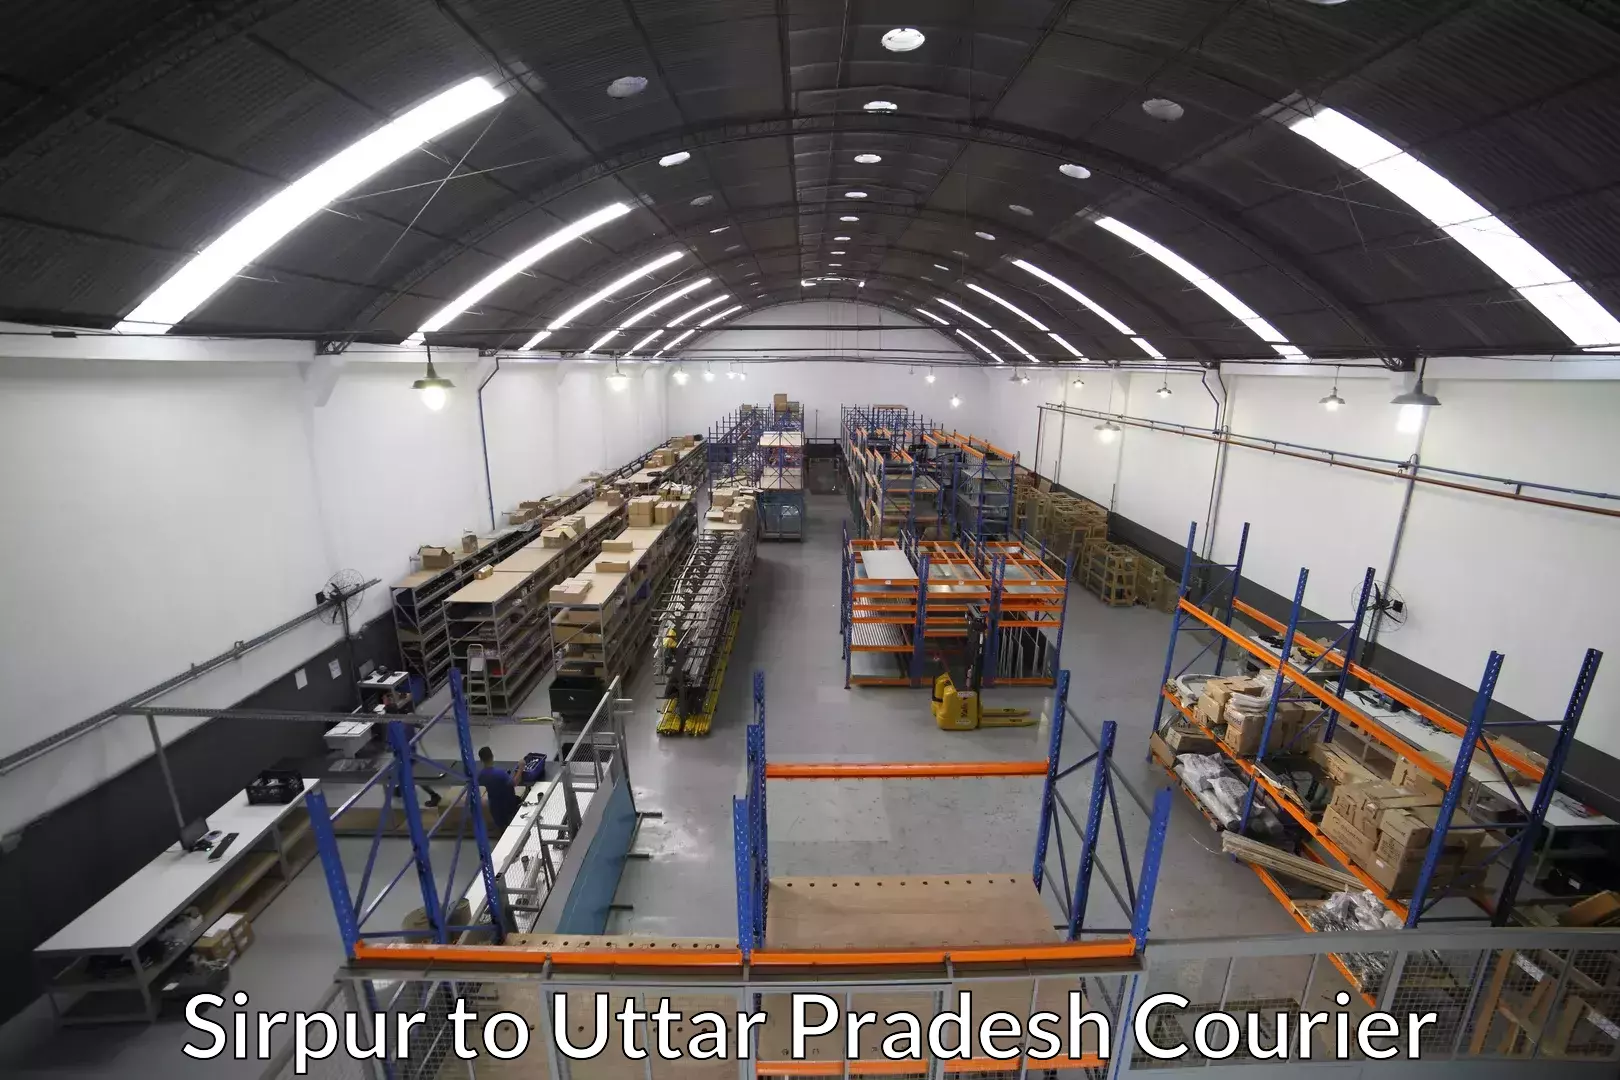 Efficient relocation services Sirpur to Uttar Pradesh